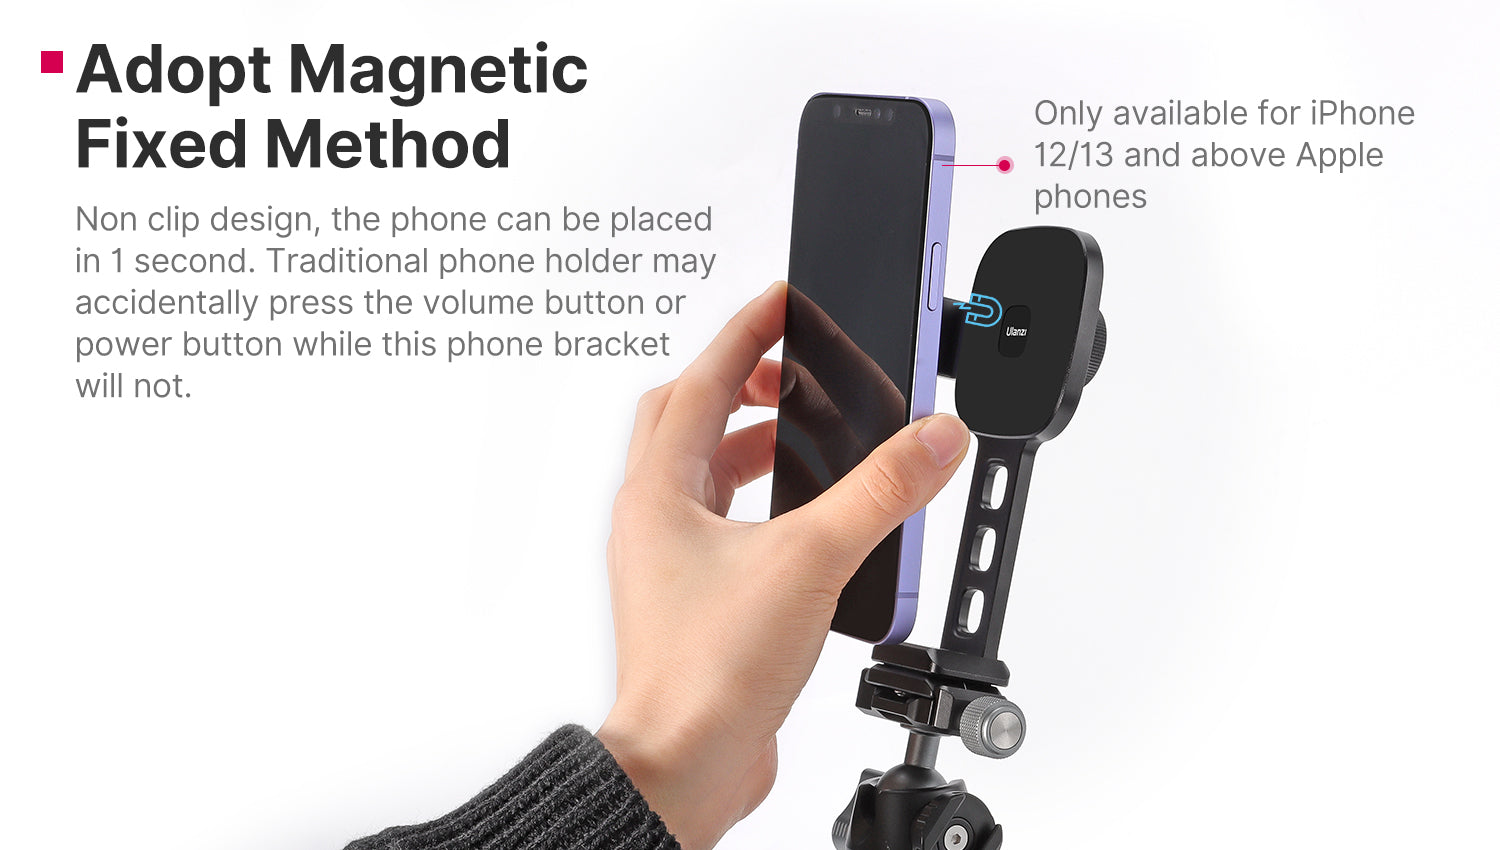 ULANZI Magnetische iPhone Stativhalterung ST-28, Magnet Telefon Halter  Adapter Stativ Befestigung Kompatibel mit MagSafe für iPhone 12 13 All  Series